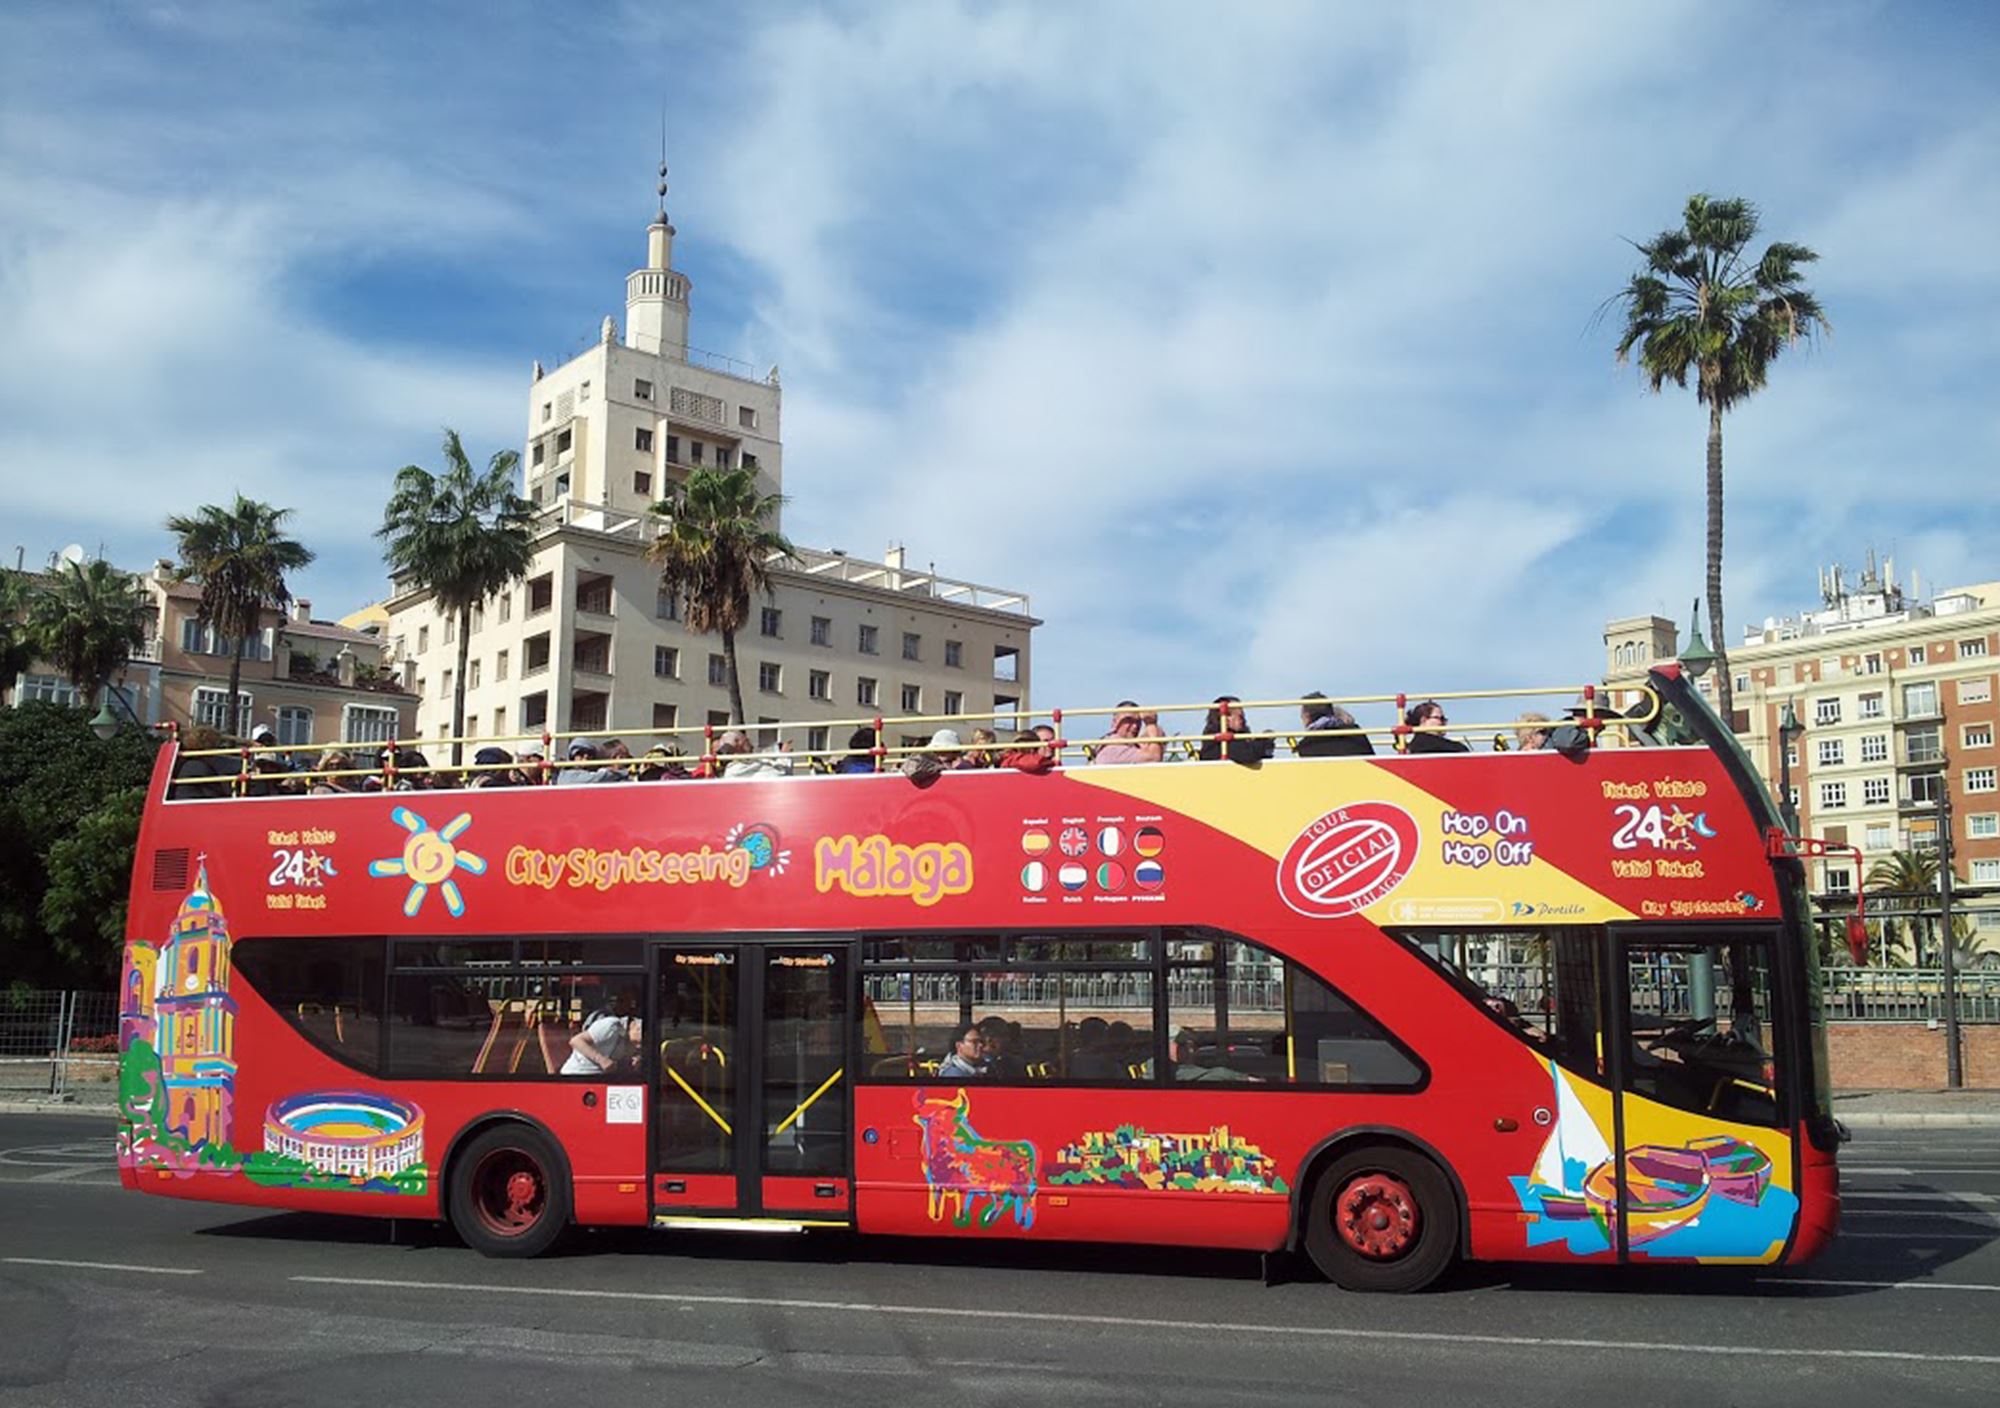 réservations visites guidées Bus Touristique City Sightseeing Málaga billets visiter